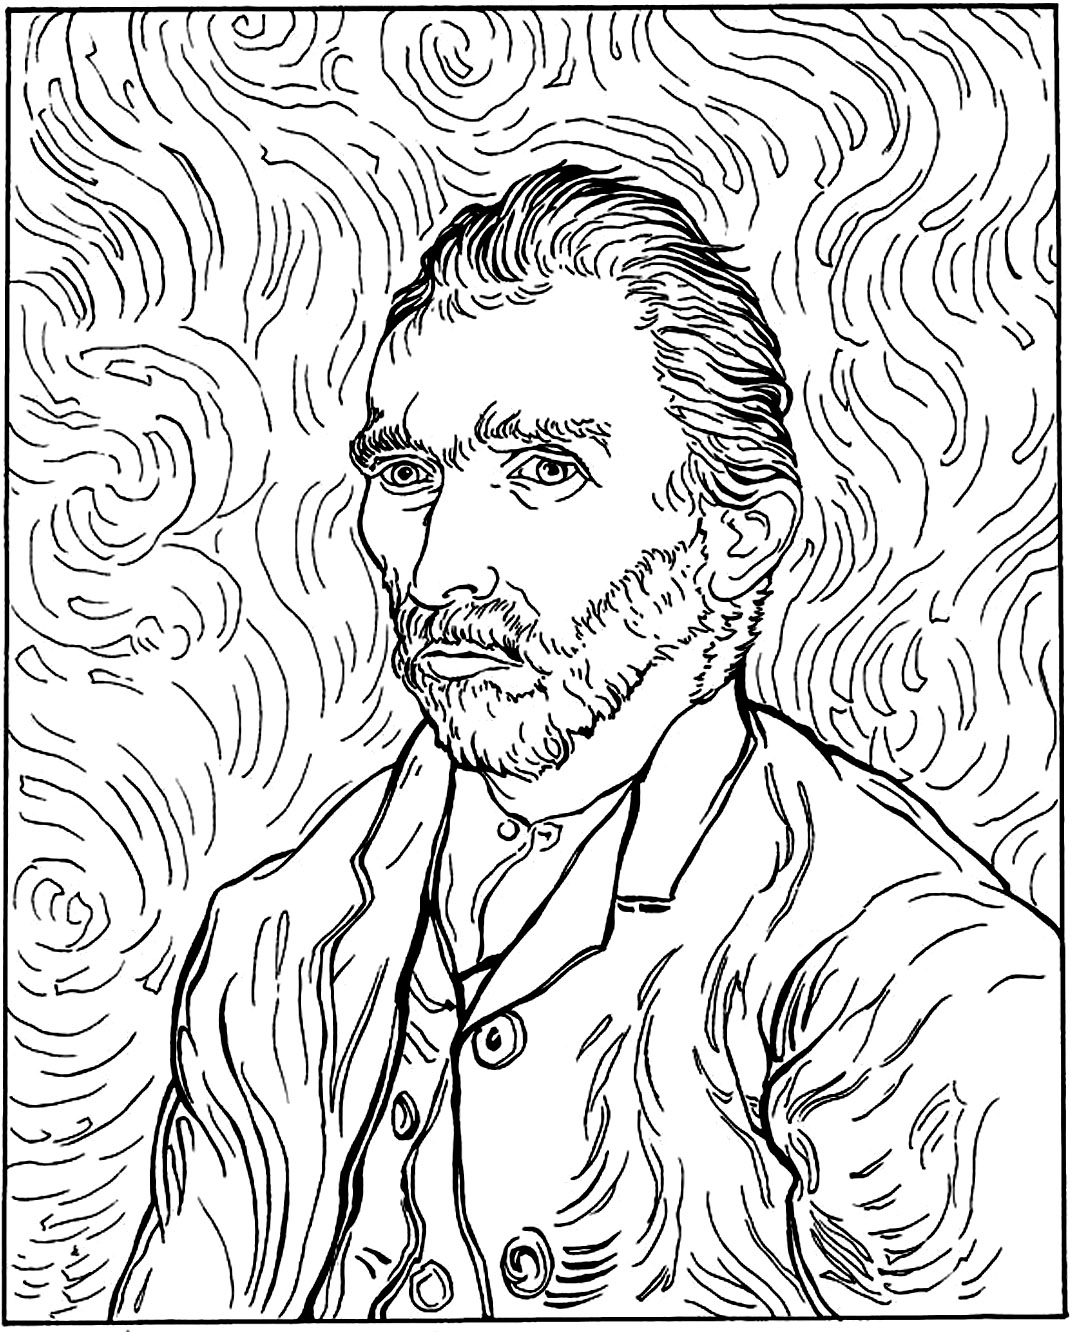 Van Gogh - Selbstporträt (1889). Vincent Van Gogh in einem seiner berühmten Selbstporträts aus dem Jahr 1889.Wussten Sie das? Van Gogh verkaufte zu Lebzeiten nur ein einziges Gemälde und wurde erst nach seinem Tod berühmt.